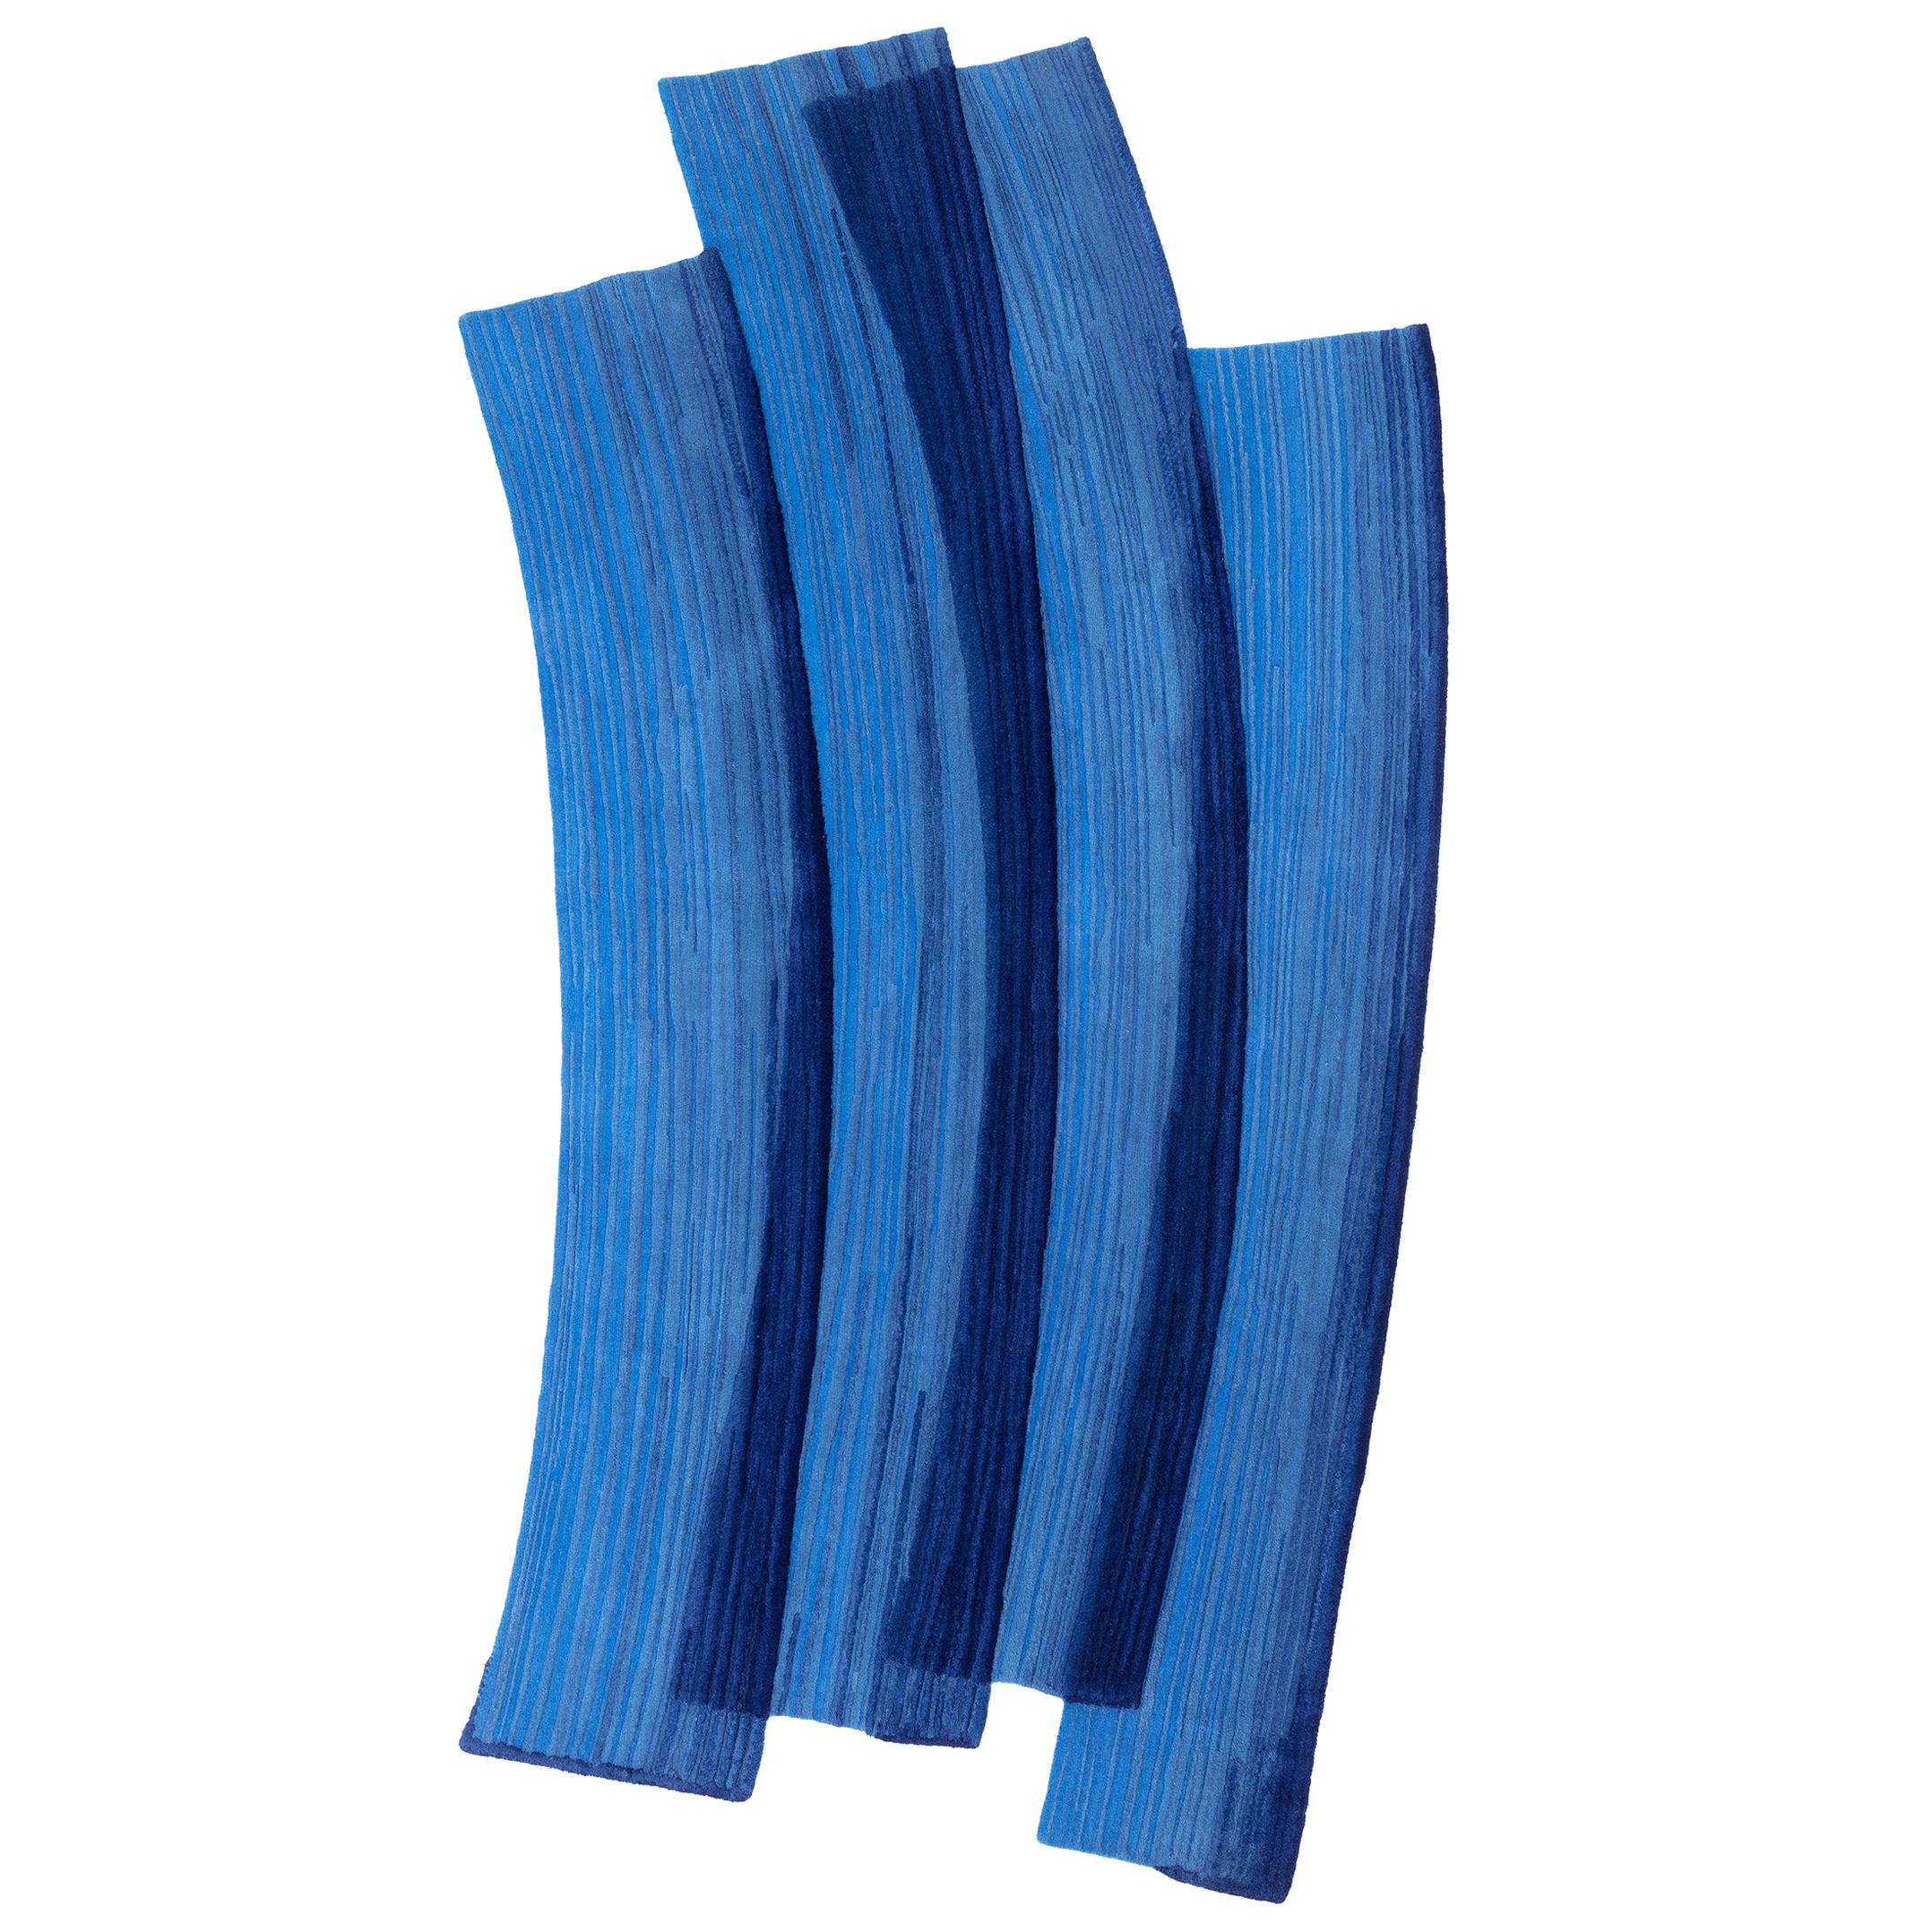 Gesture cc-tapis Stroke 1.0 Handmade Blue Rug in Wool by Sabine Marcelis